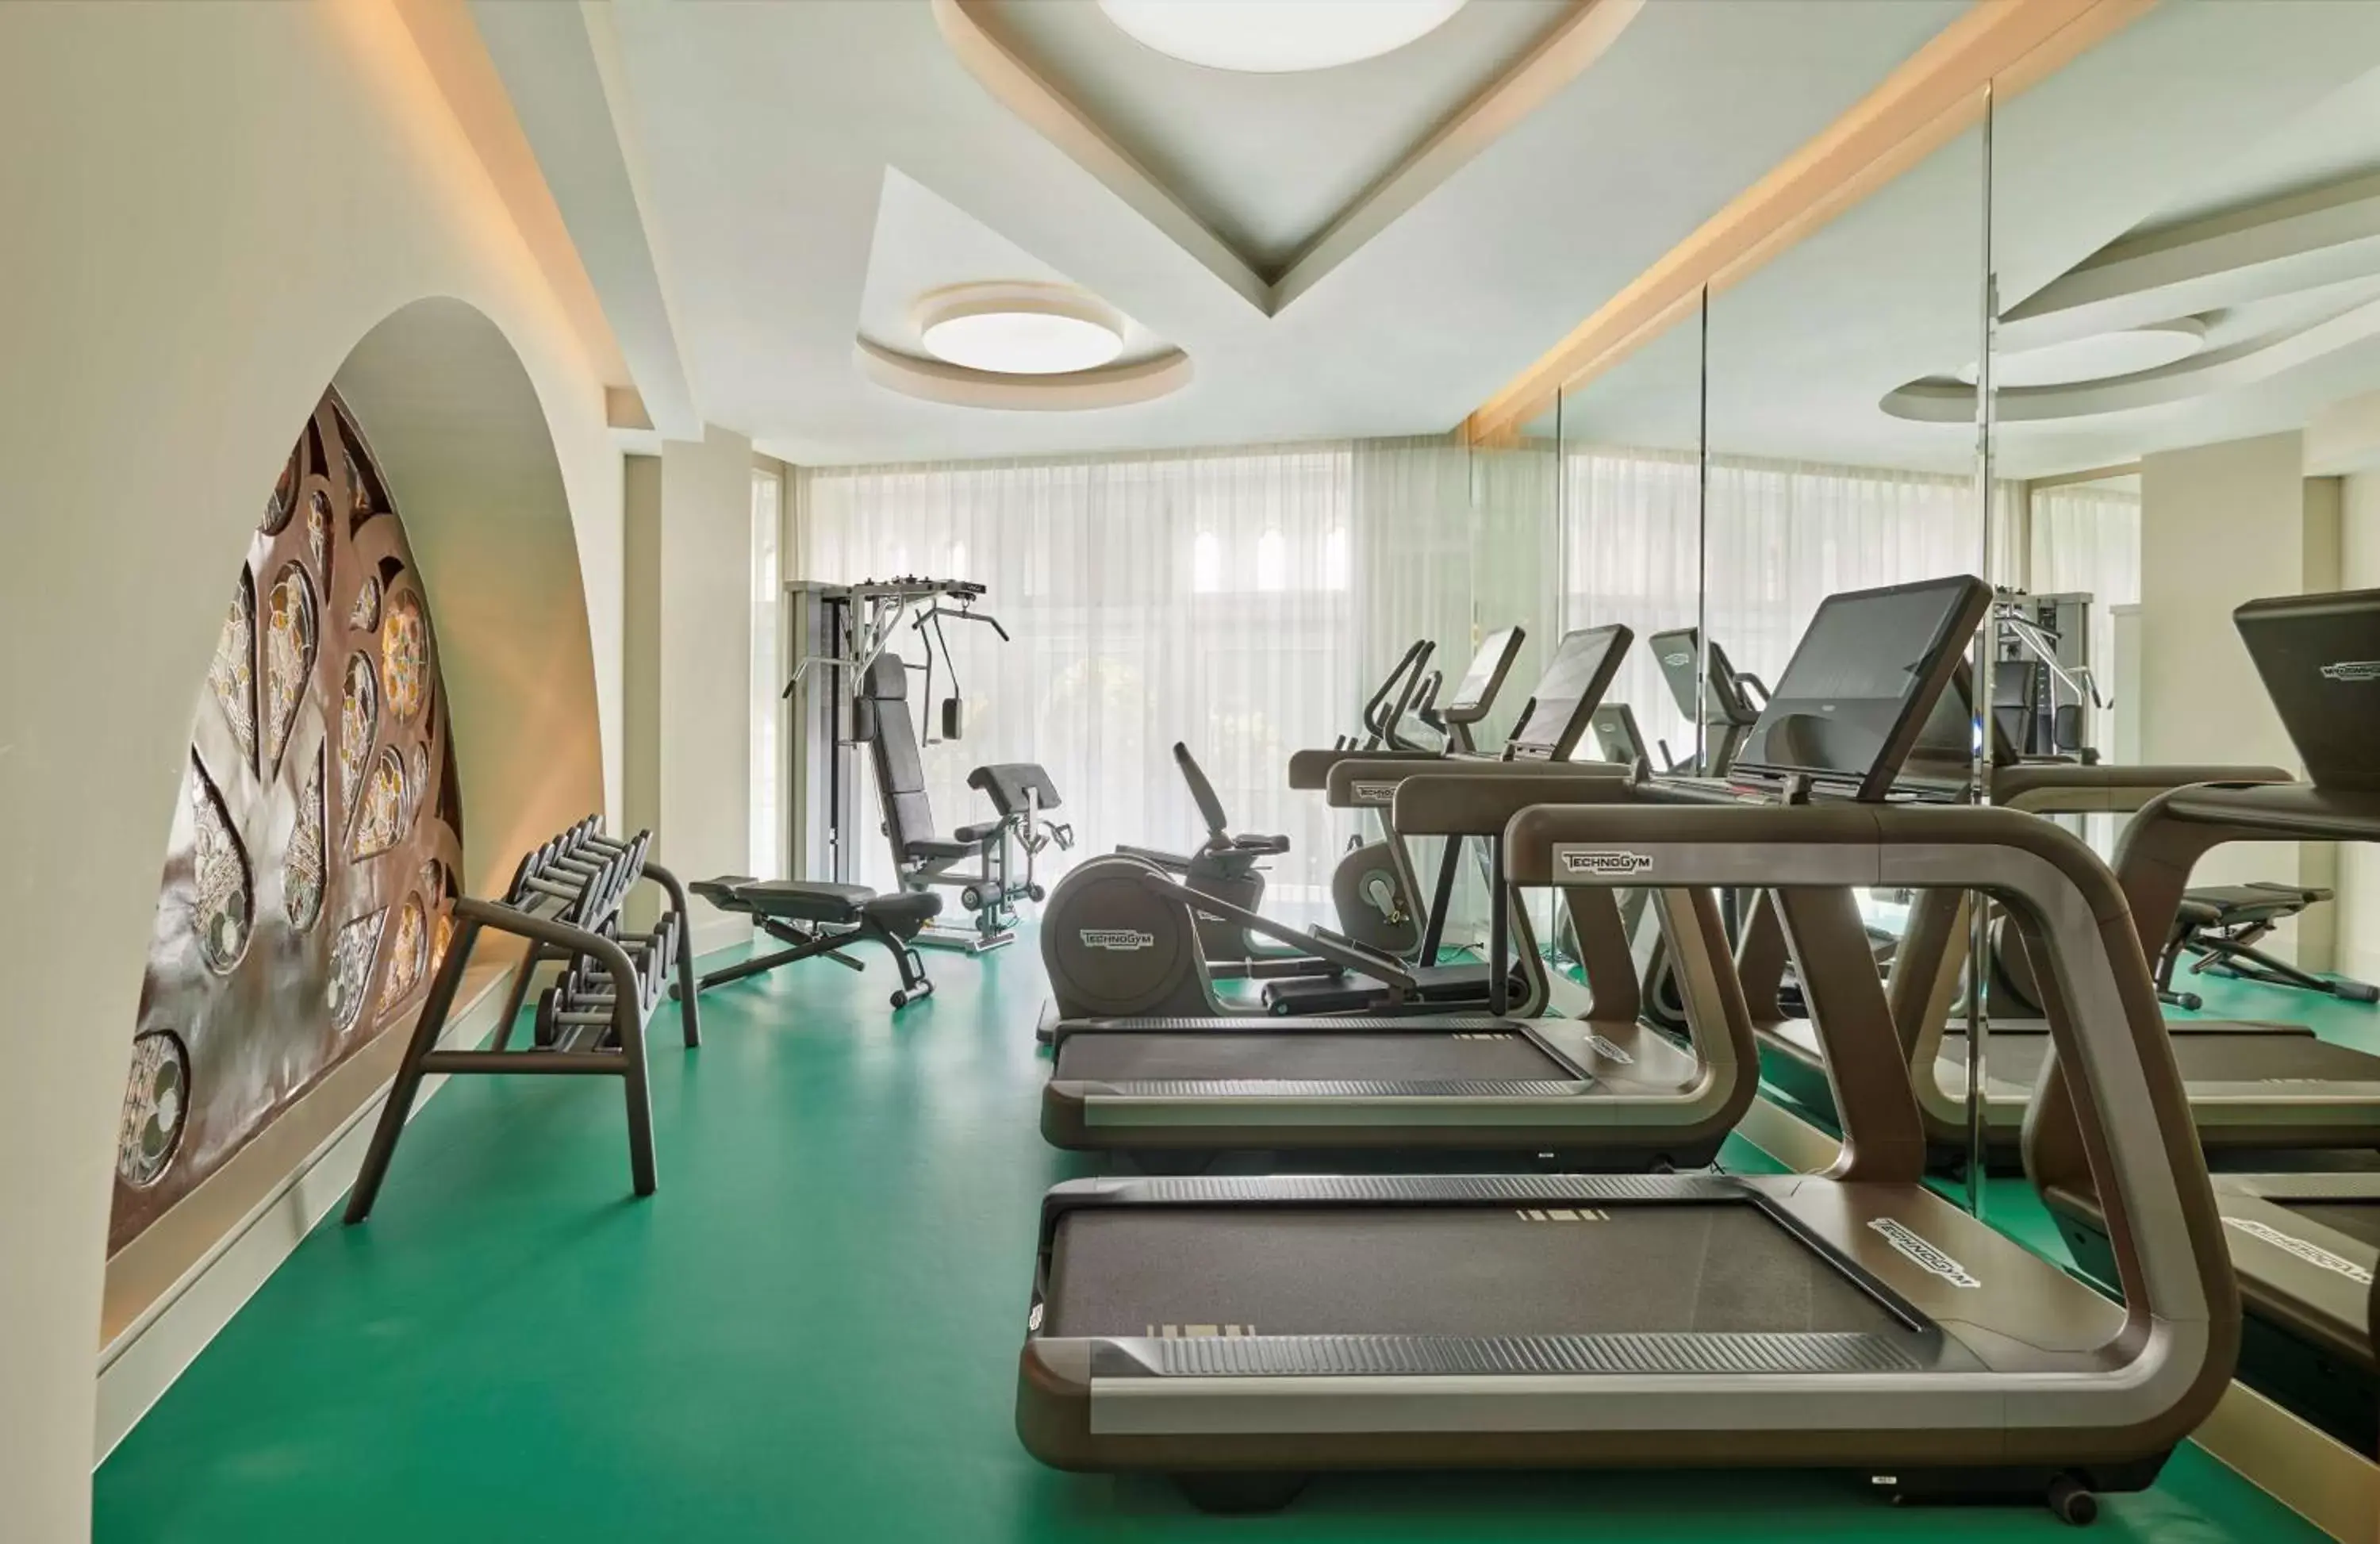 Fitness centre/facilities, Fitness Center/Facilities in Párisi Udvar Hotel Budapest, part of Hyatt